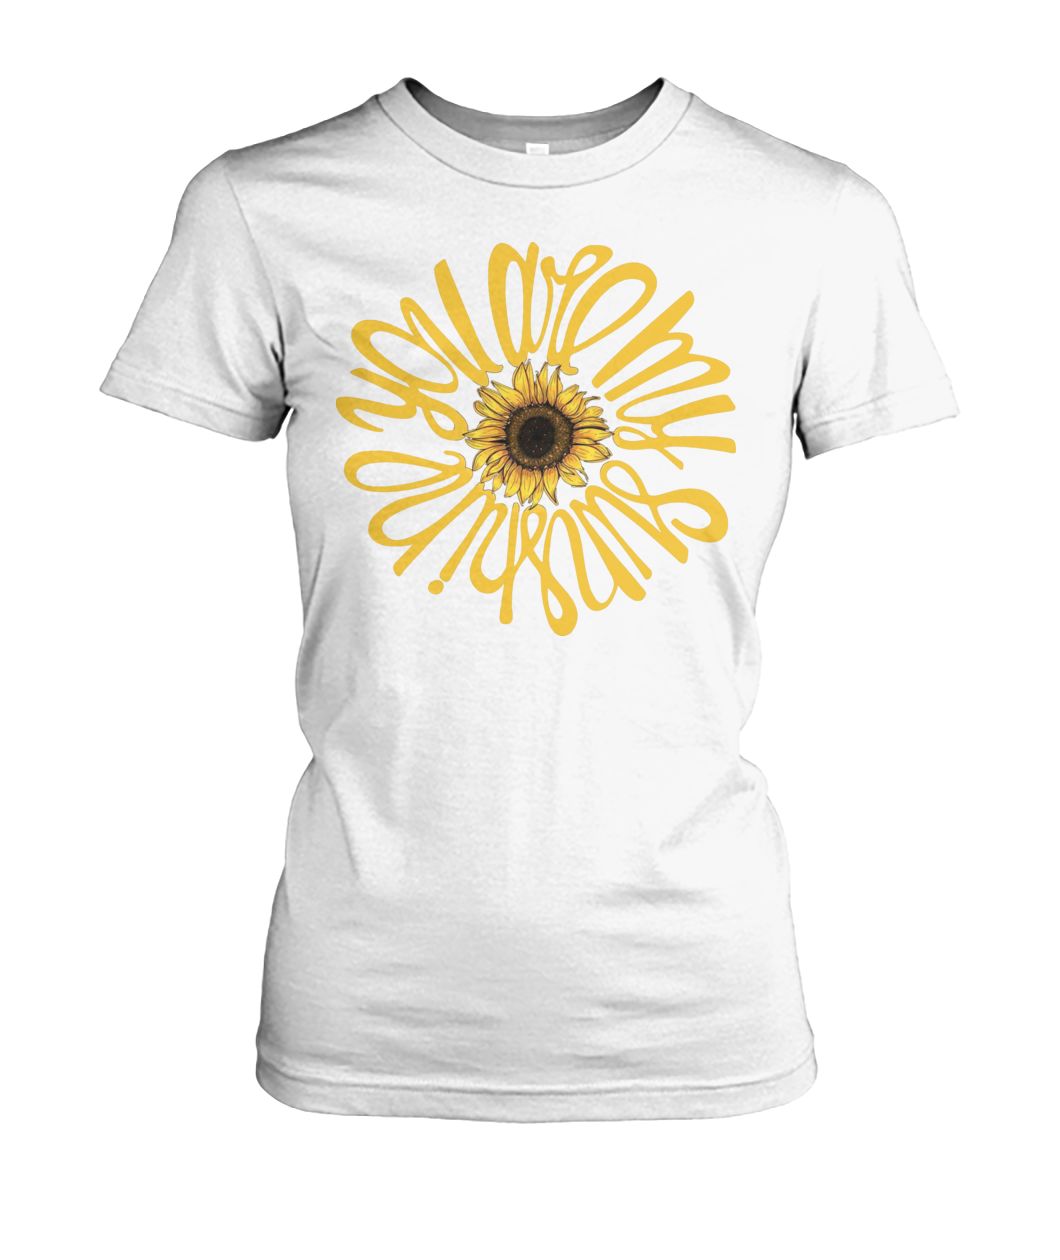 You are my sunshine sunflower women's crew tee